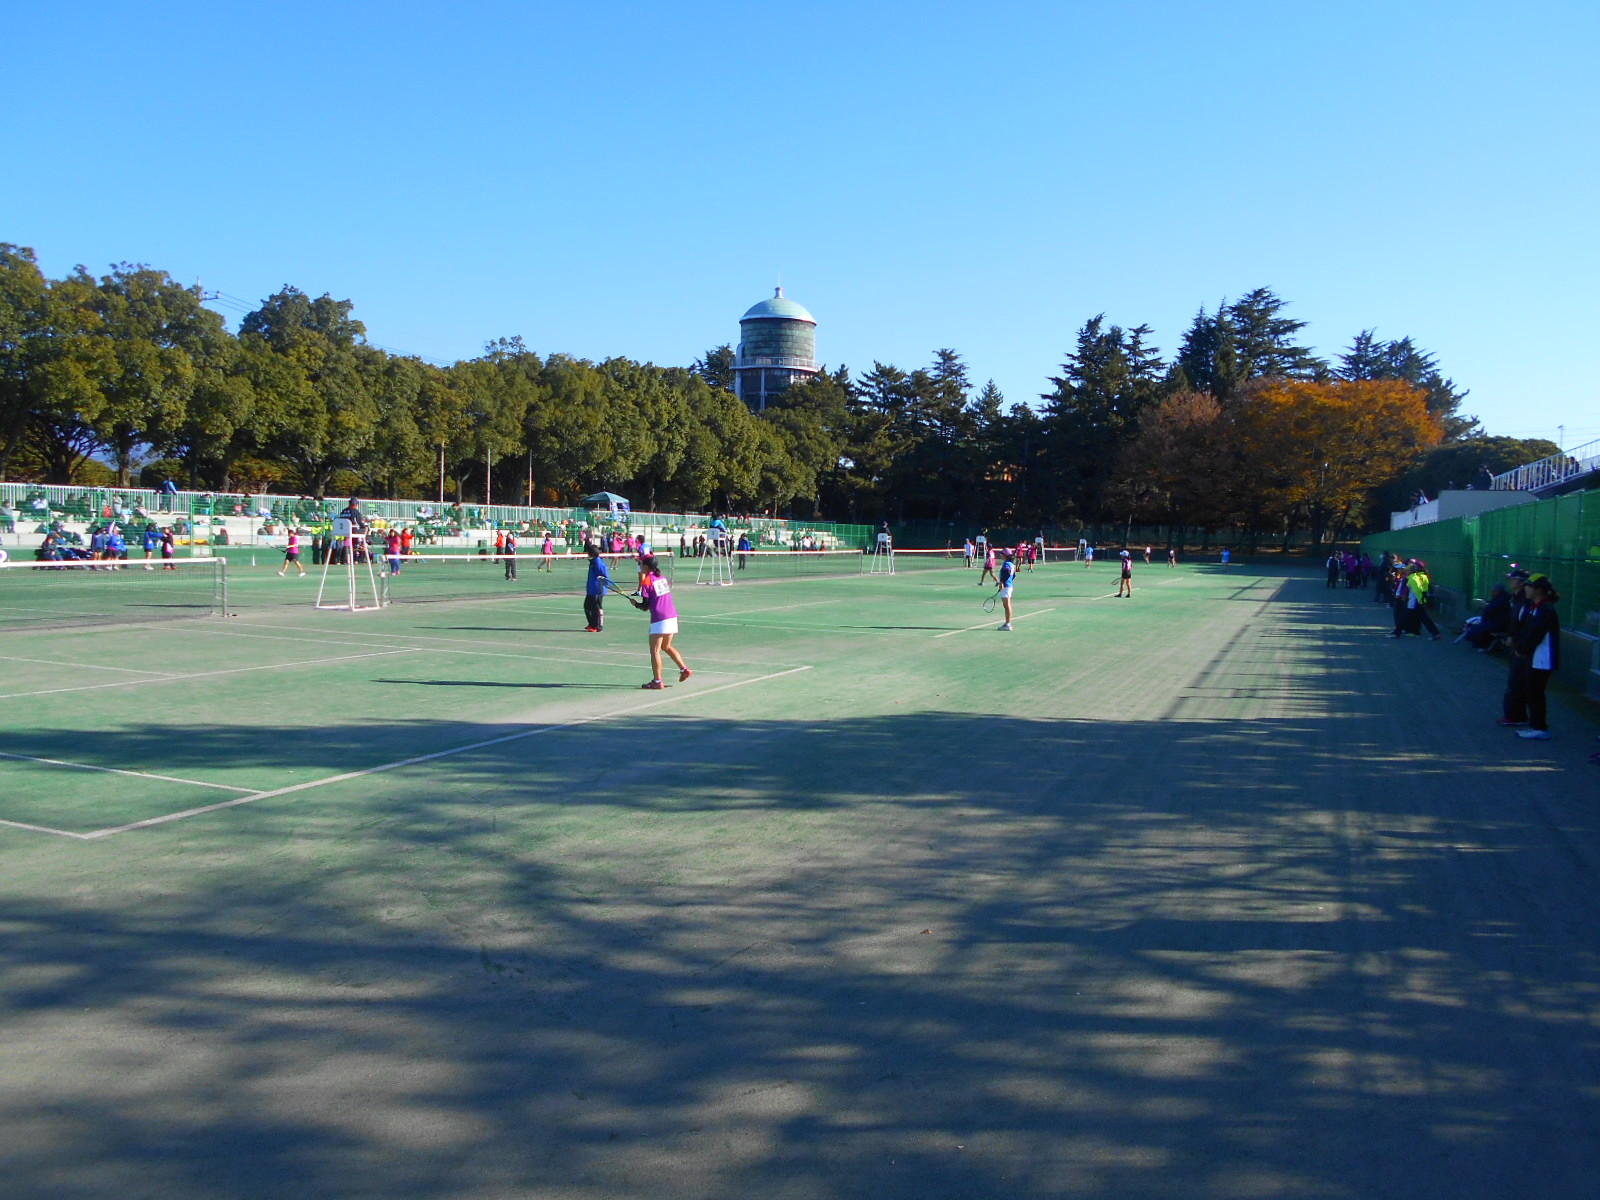 群馬県立敷島公園テニスコートでの各種テニス大会の実施